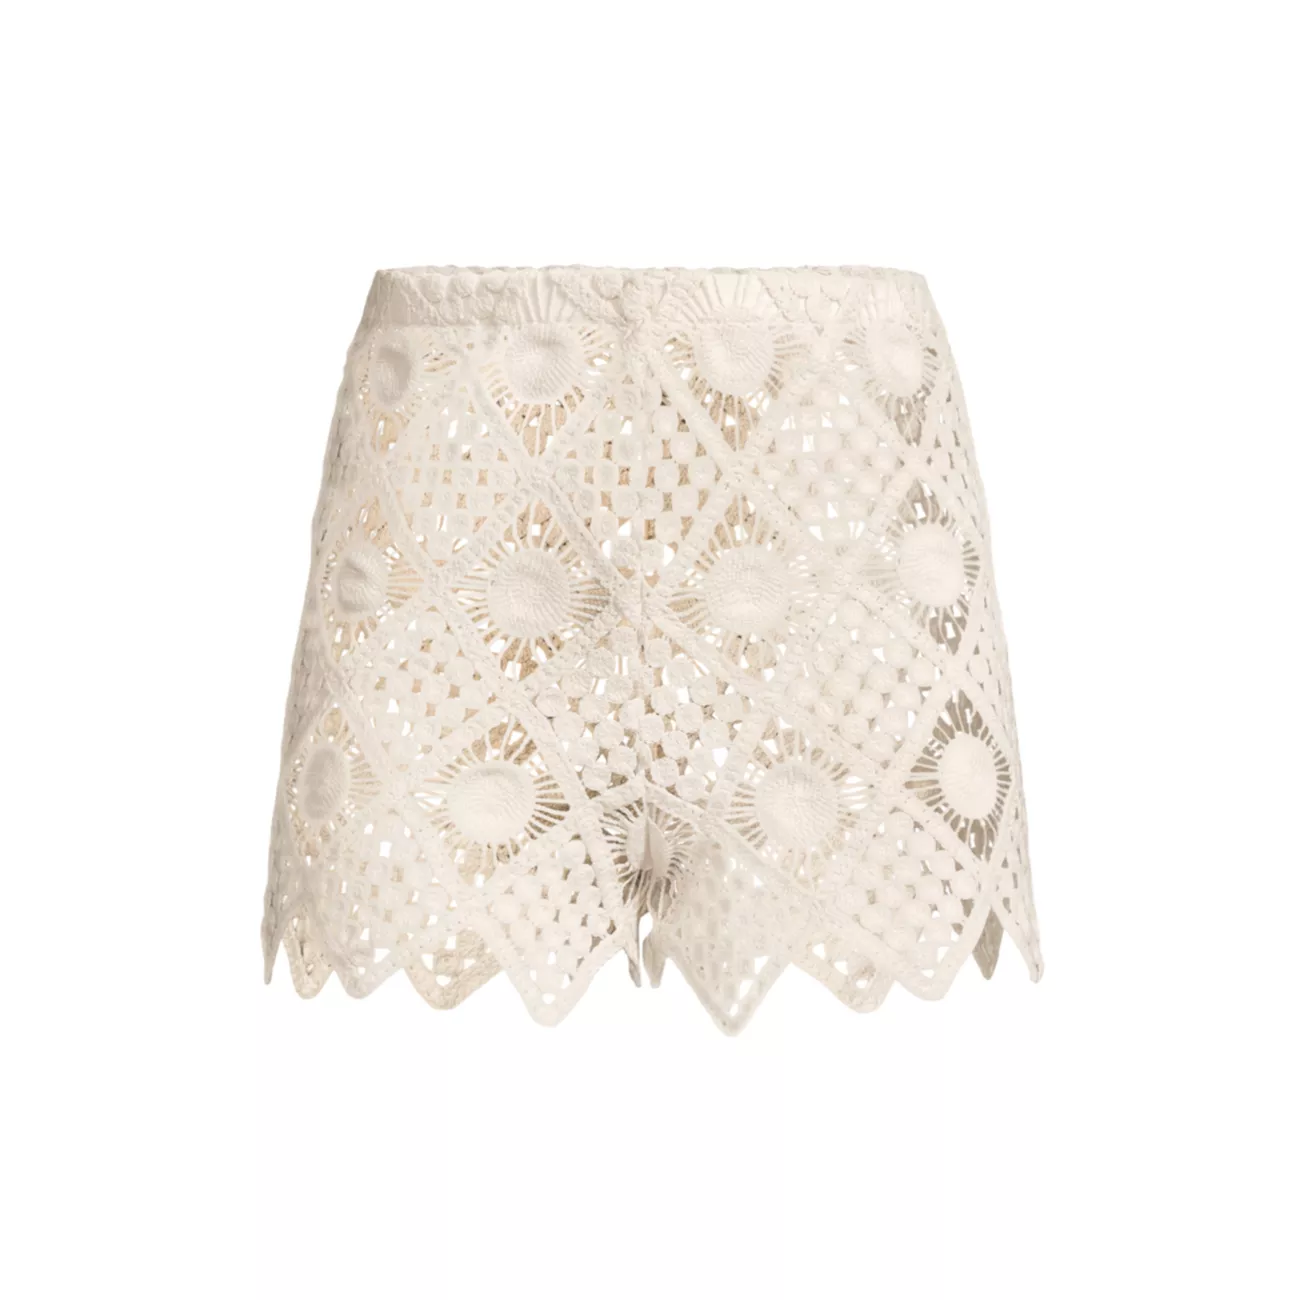 Playa Crochet Cover-Up Shorts Sara Cristina